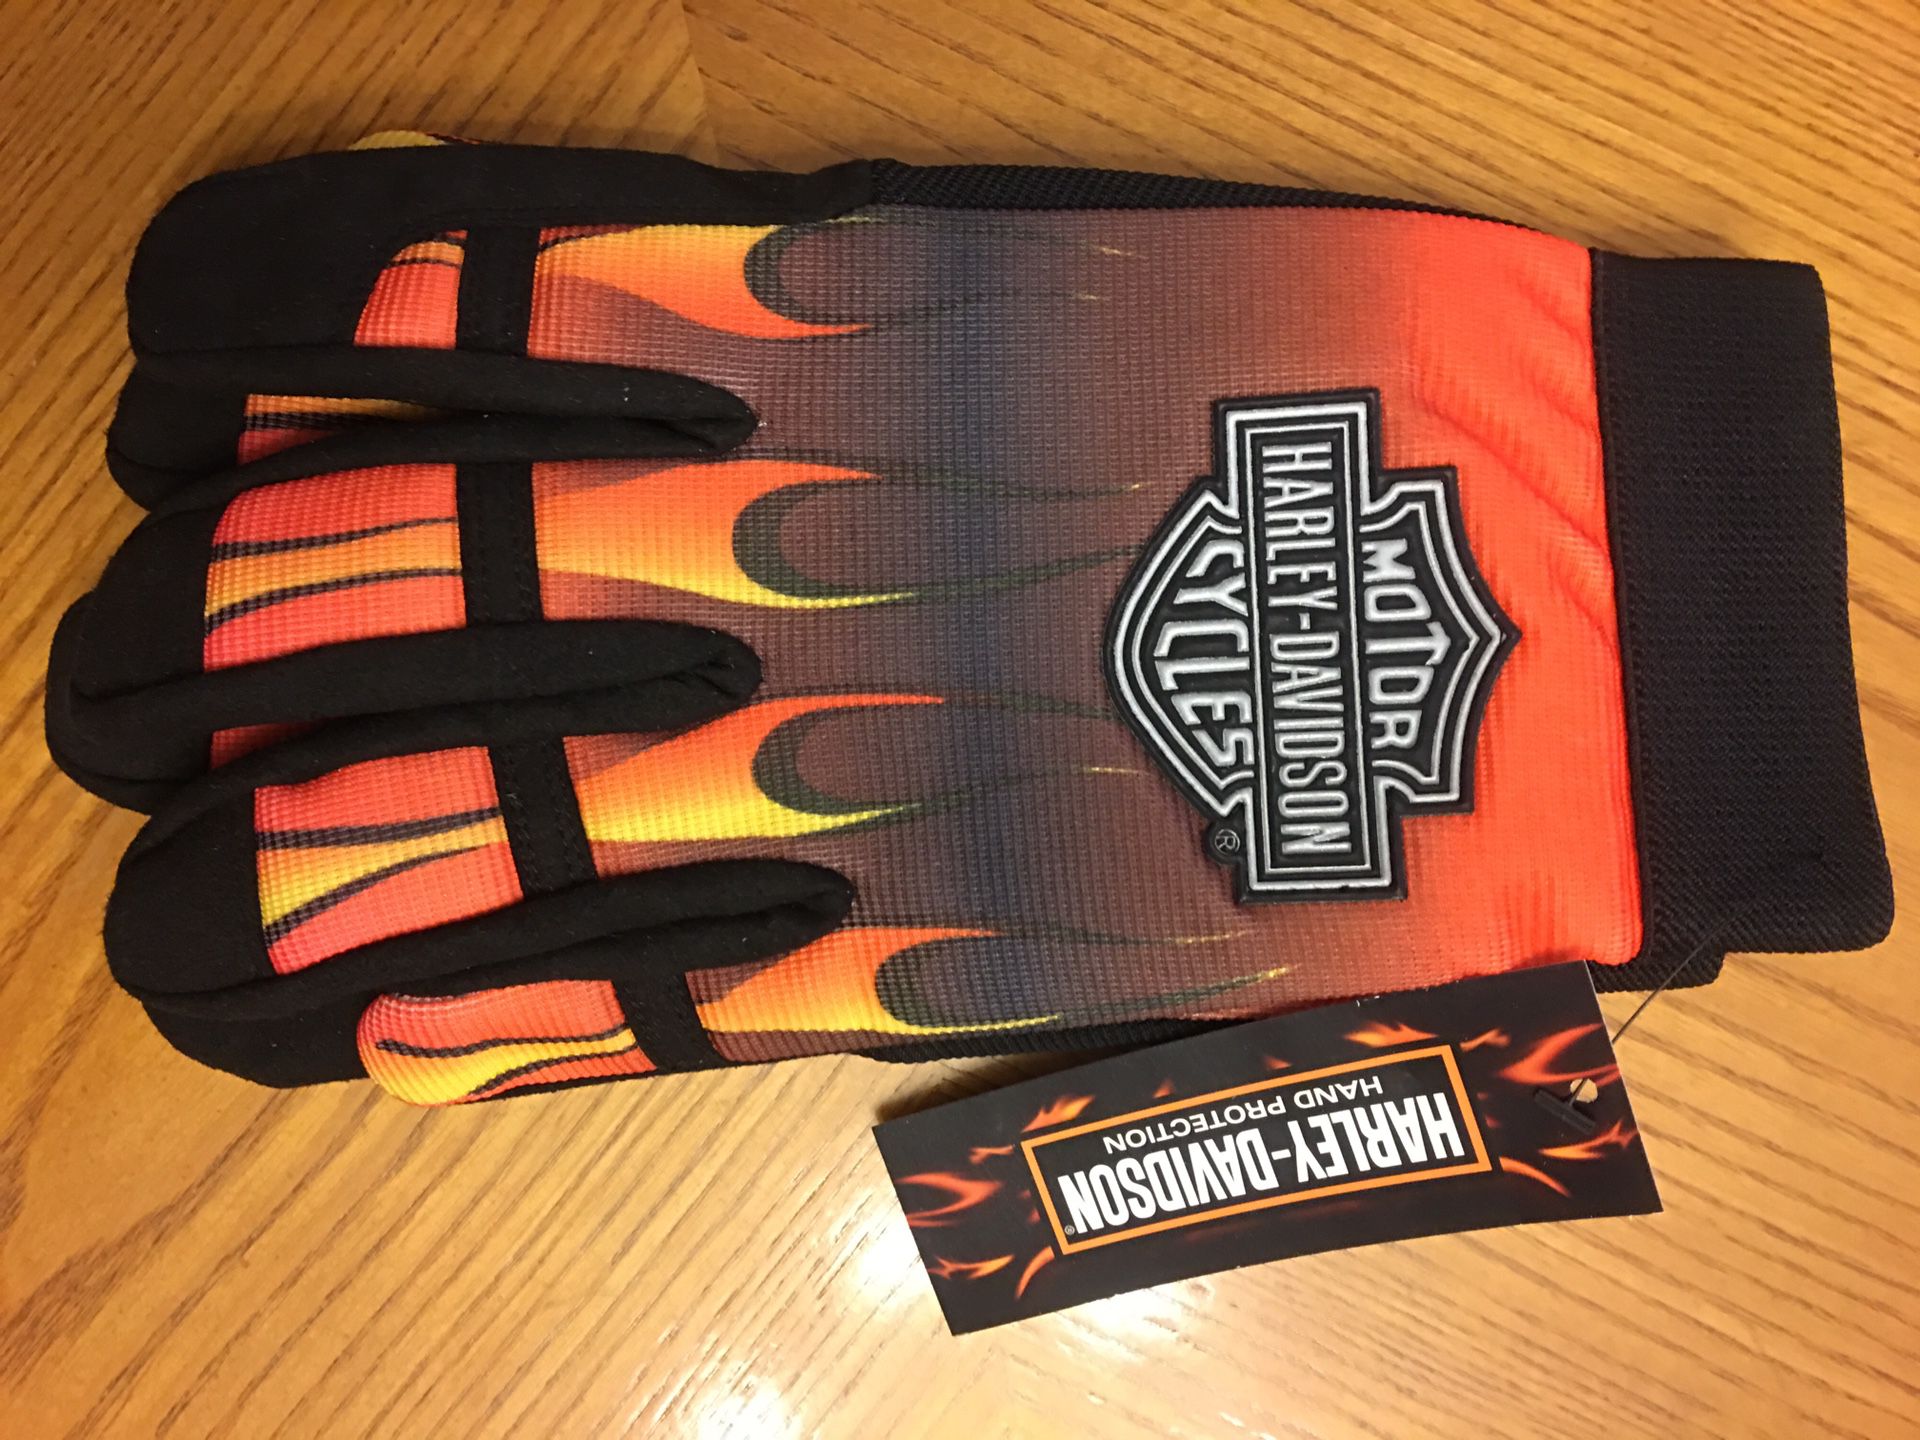 Harley Davidson flame gloves!